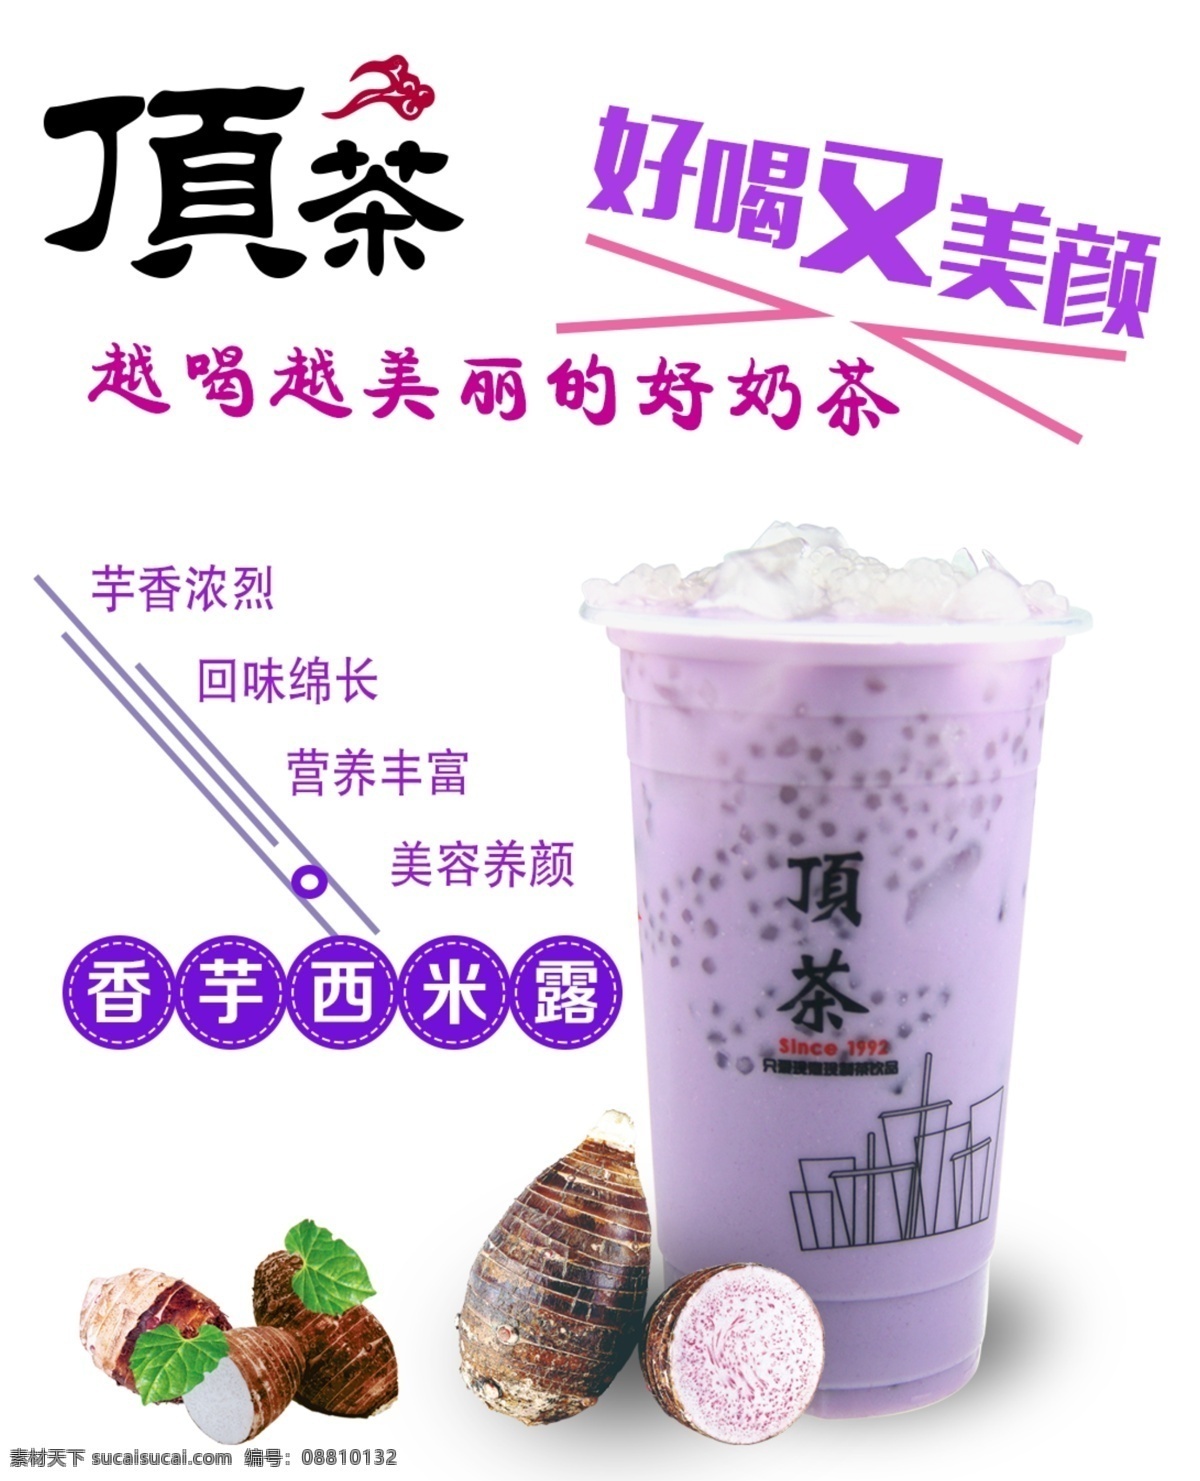 香芋 西 米露 奶茶 清新 海报 高清图片 芒果 美食 奶茶广告 奶茶饮品 饮料 广告 模板下载 饮品 草莓 白色